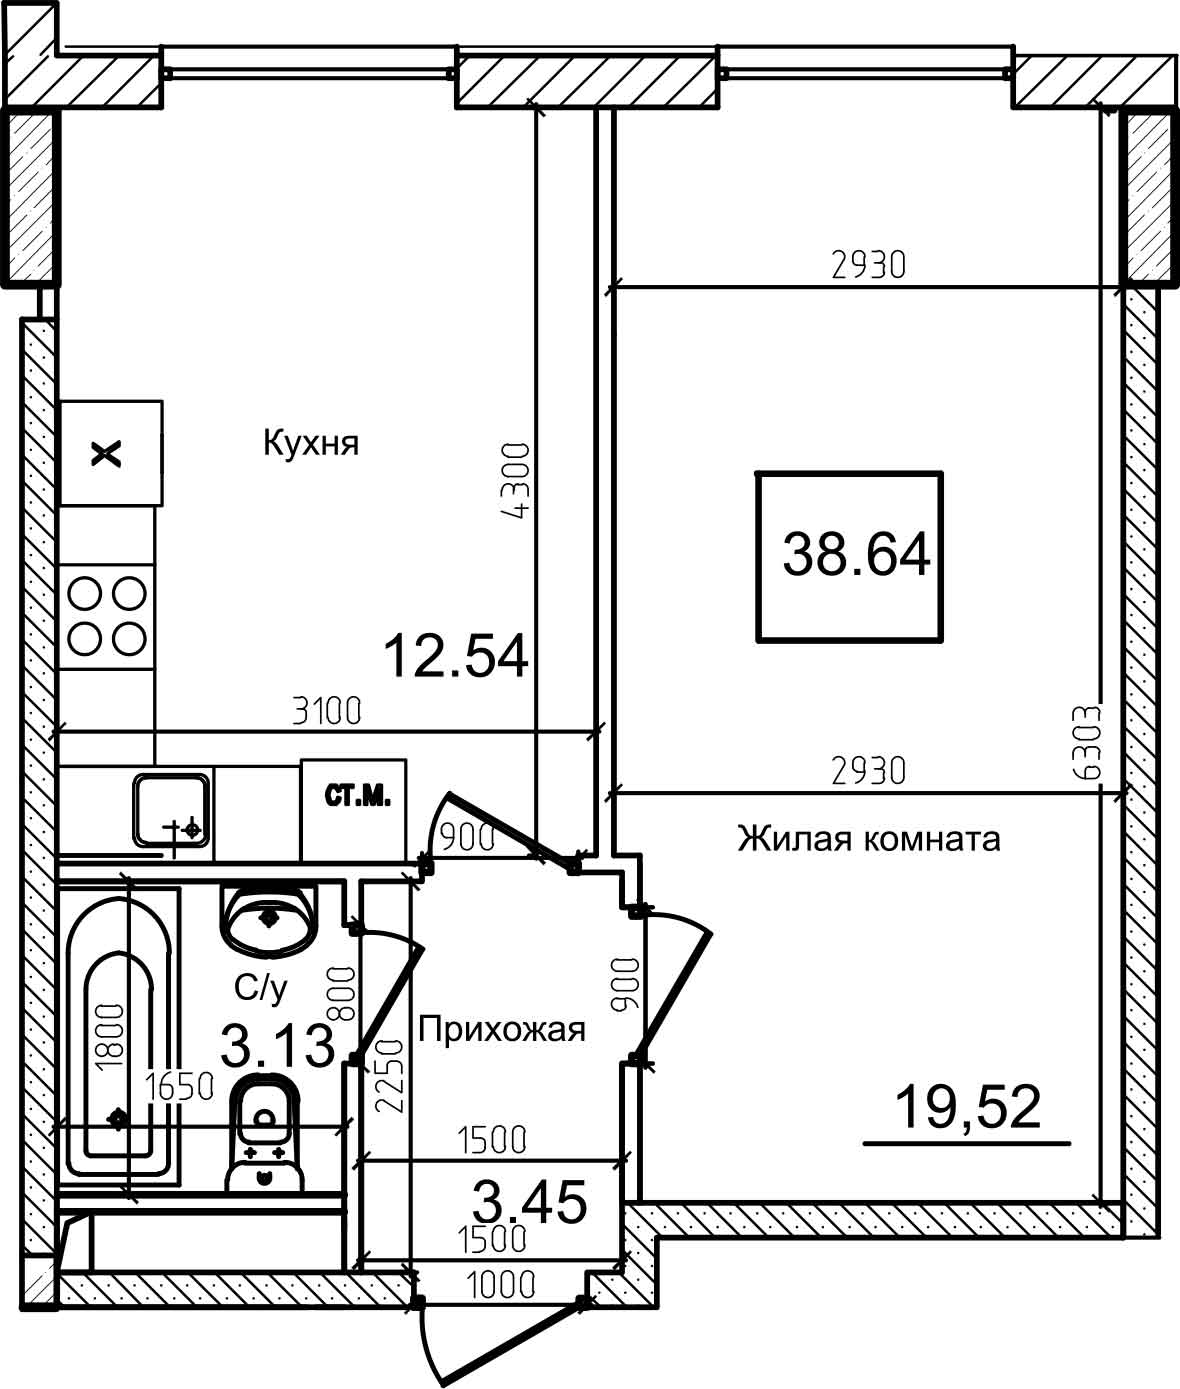 Планировка 1-к квартира площей 38м2, AB-08-10/00009.